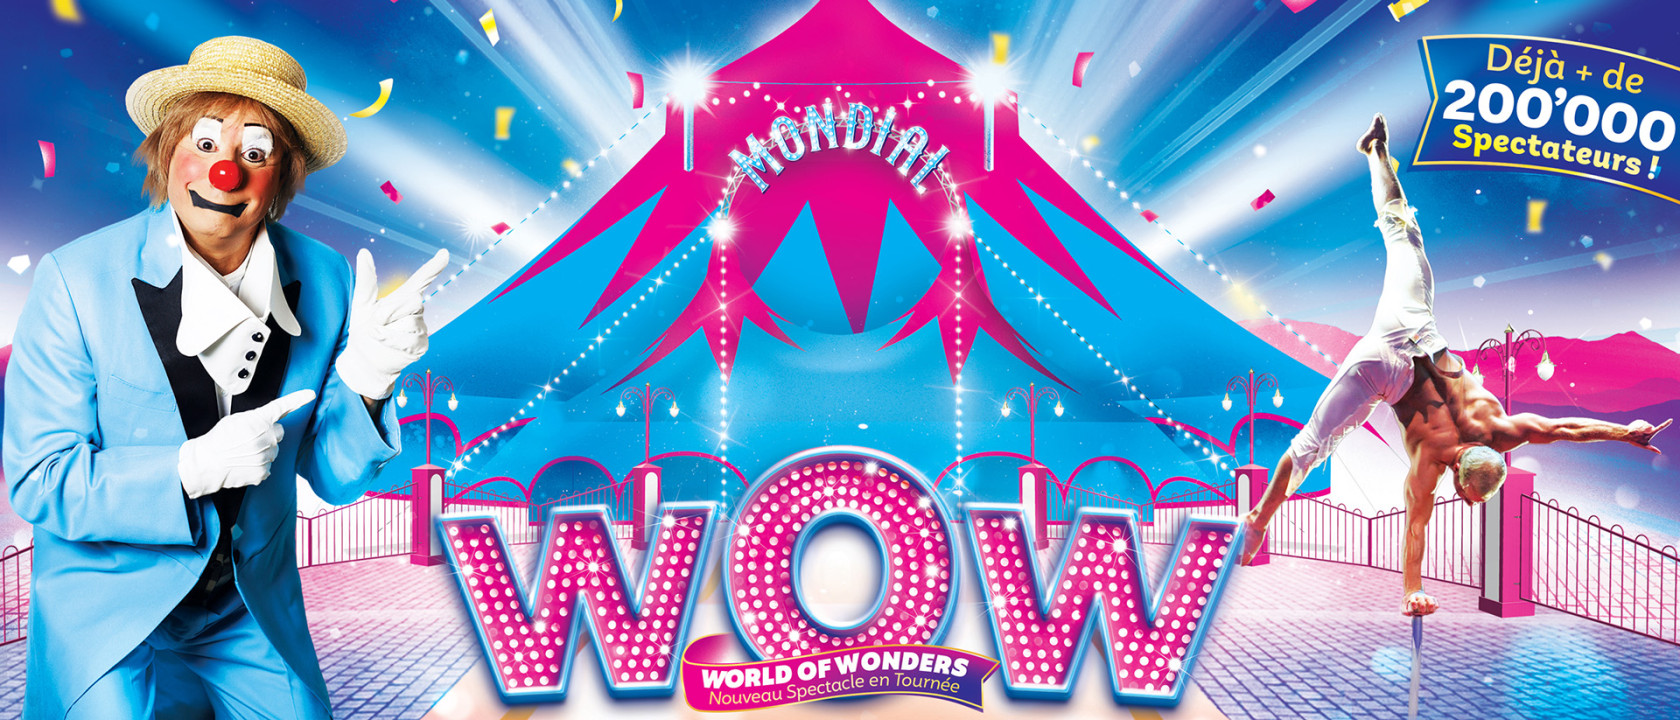 Nouveau spectacle WOW World of Wonders présenté par le nouveau cirque mondial